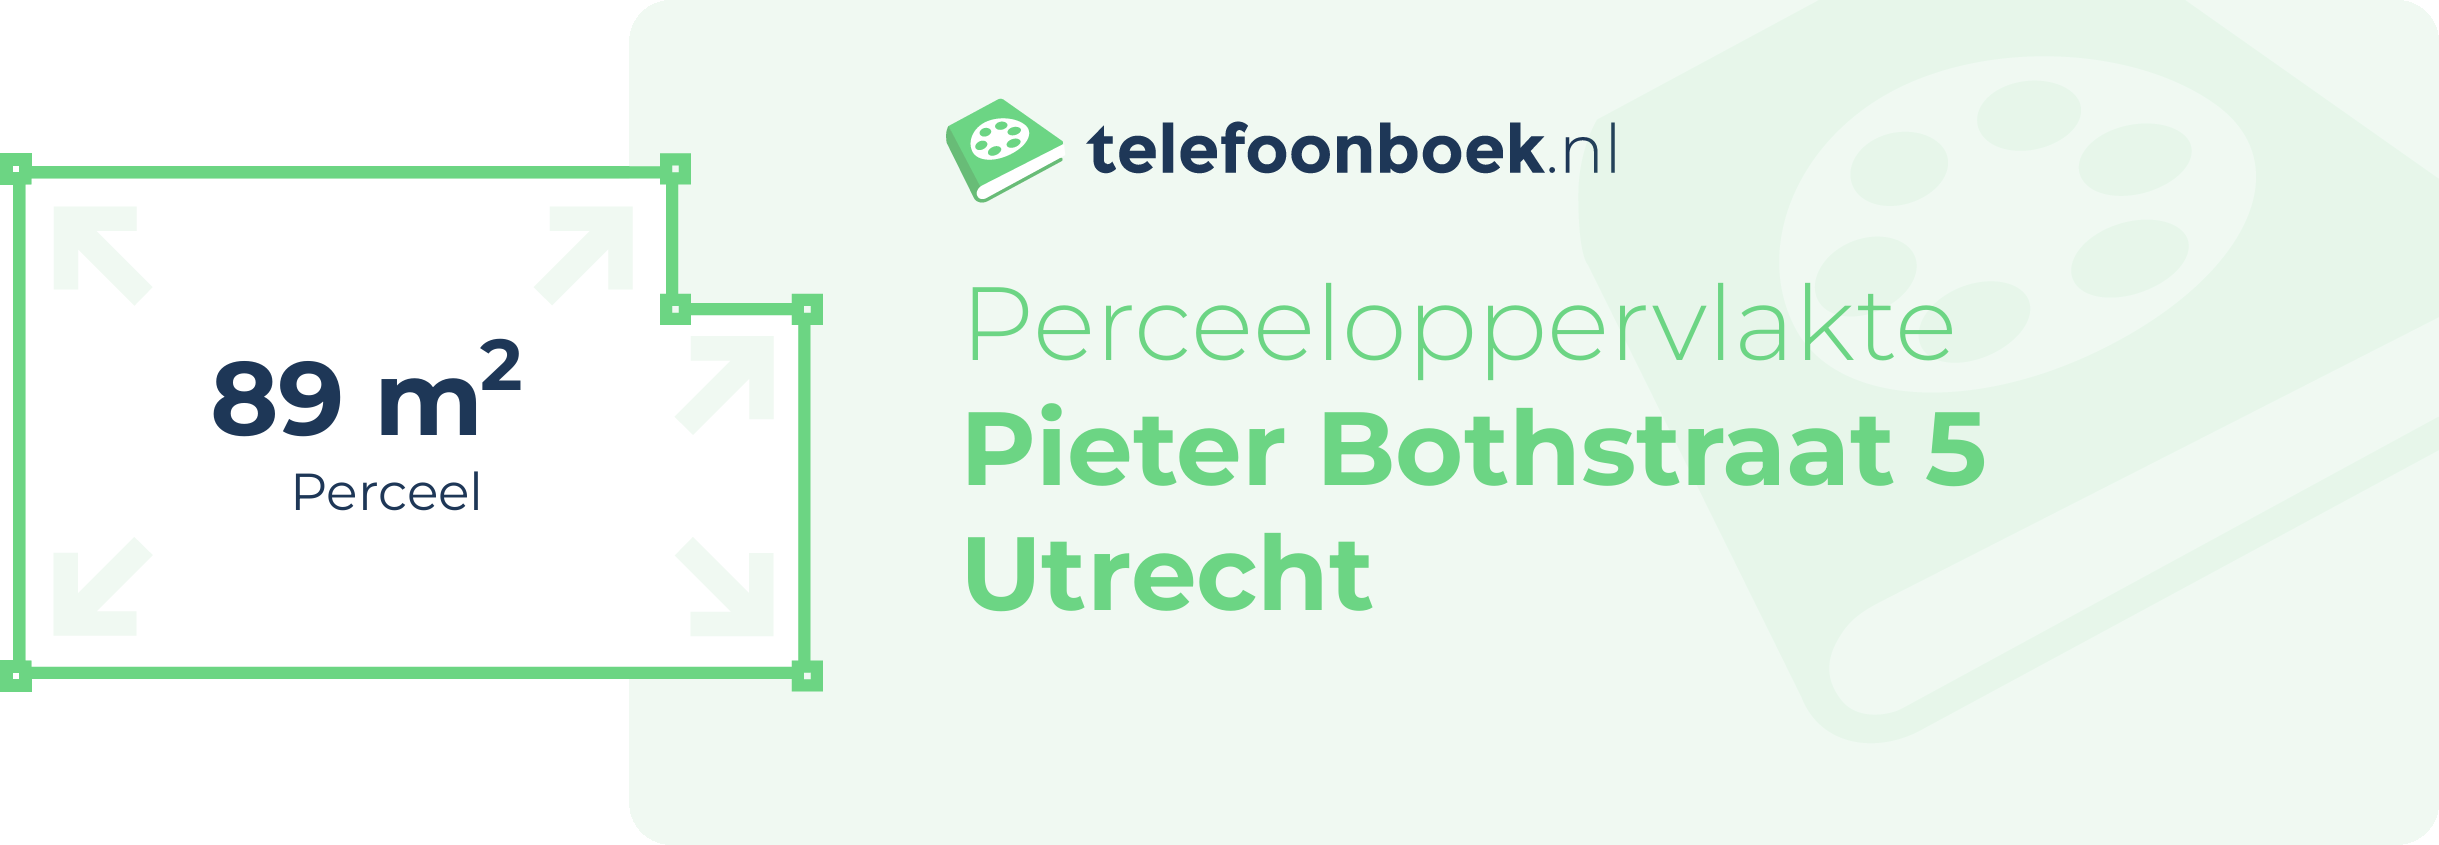 Perceeloppervlakte Pieter Bothstraat 5 Utrecht